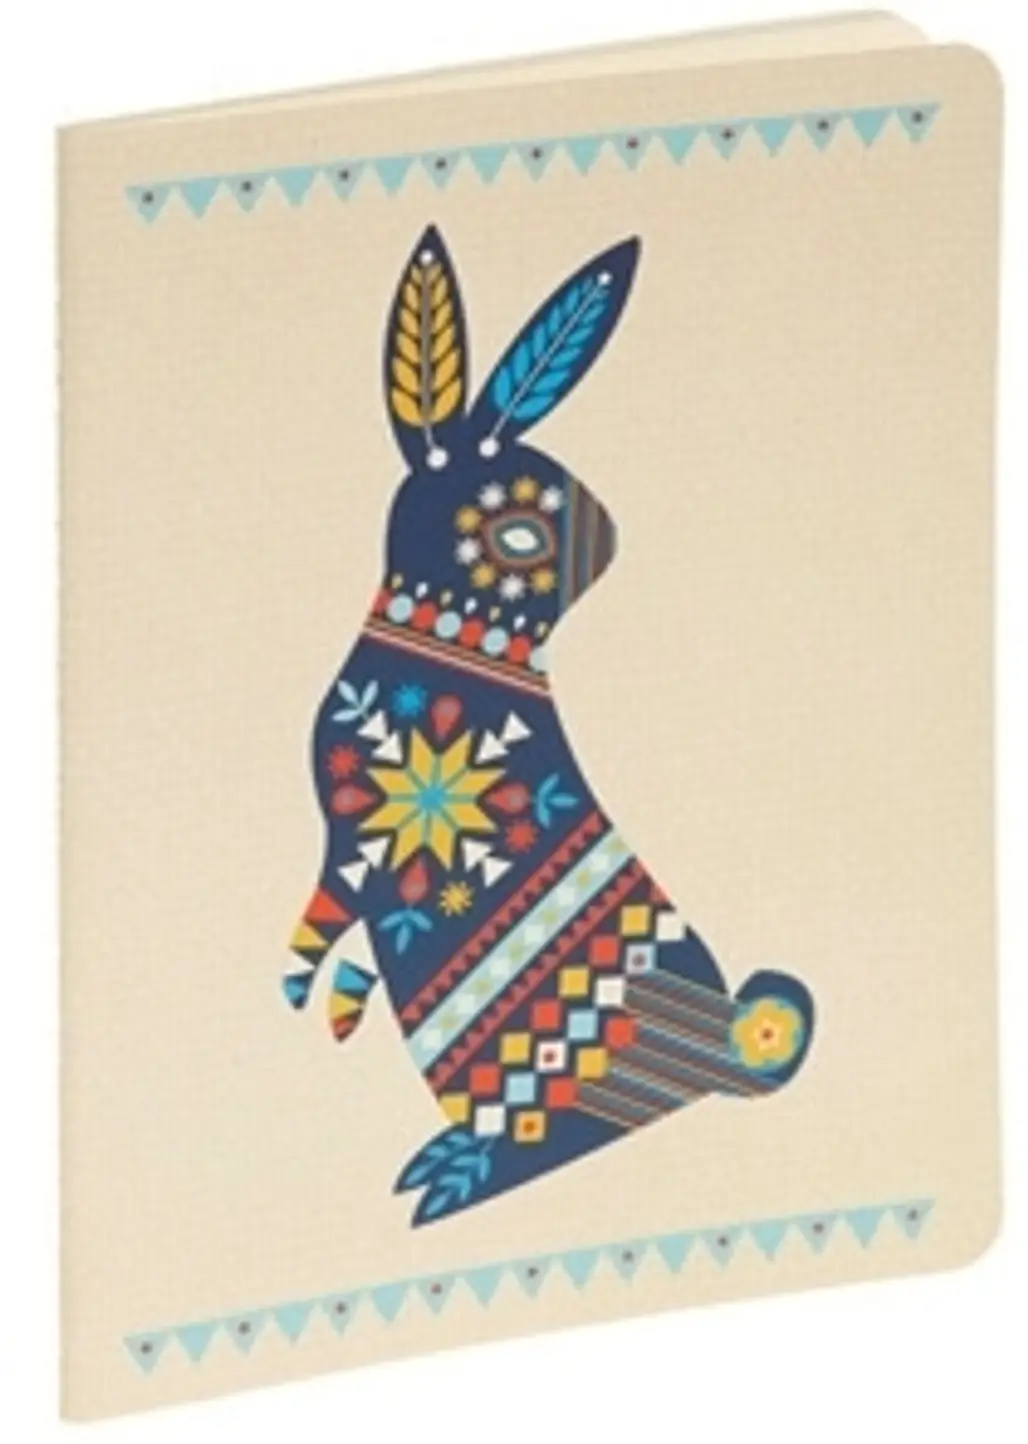 Pennsylvania Dutch Rabbit Notebook